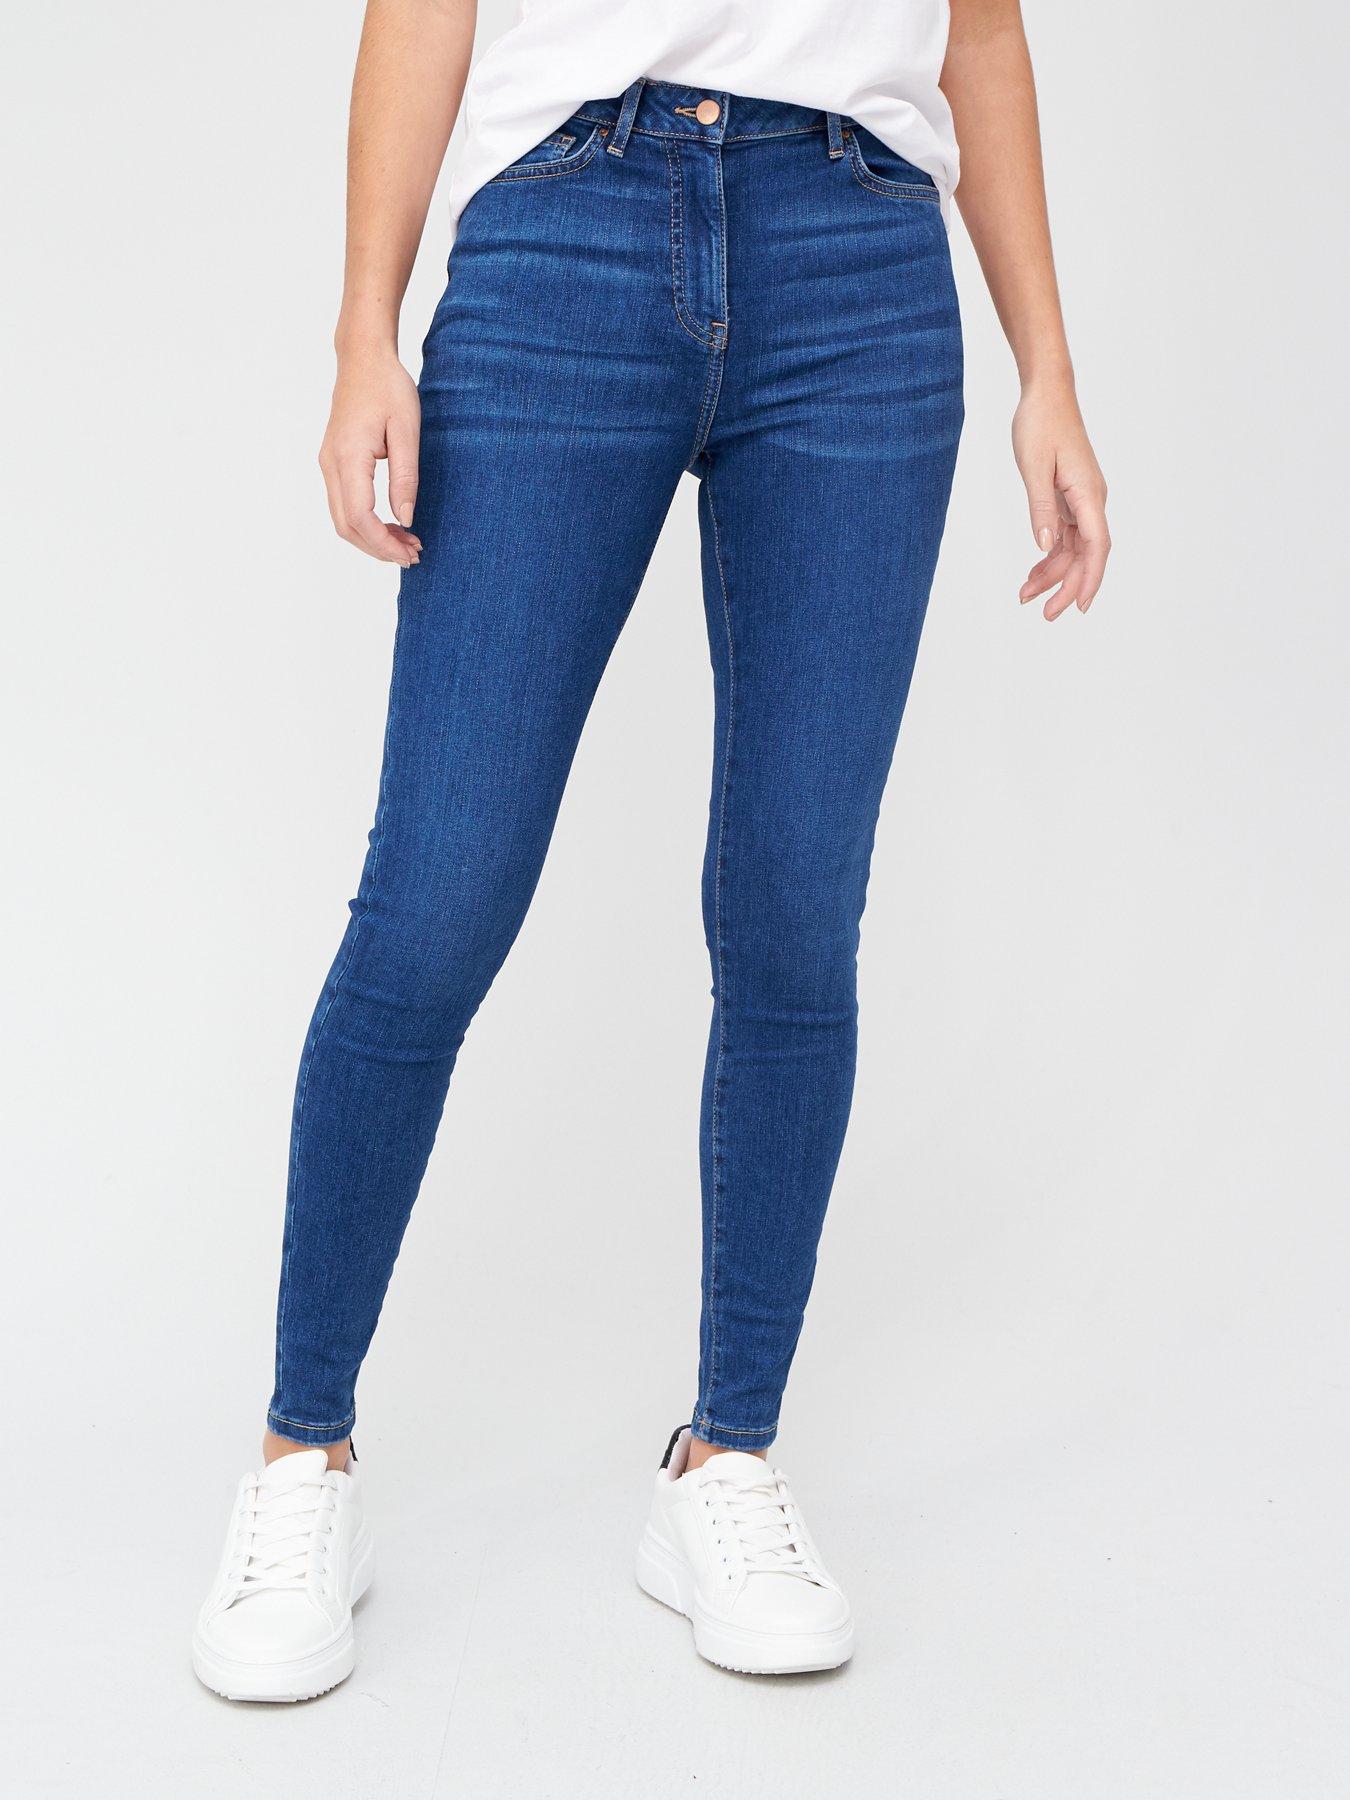 buy jeans online ireland